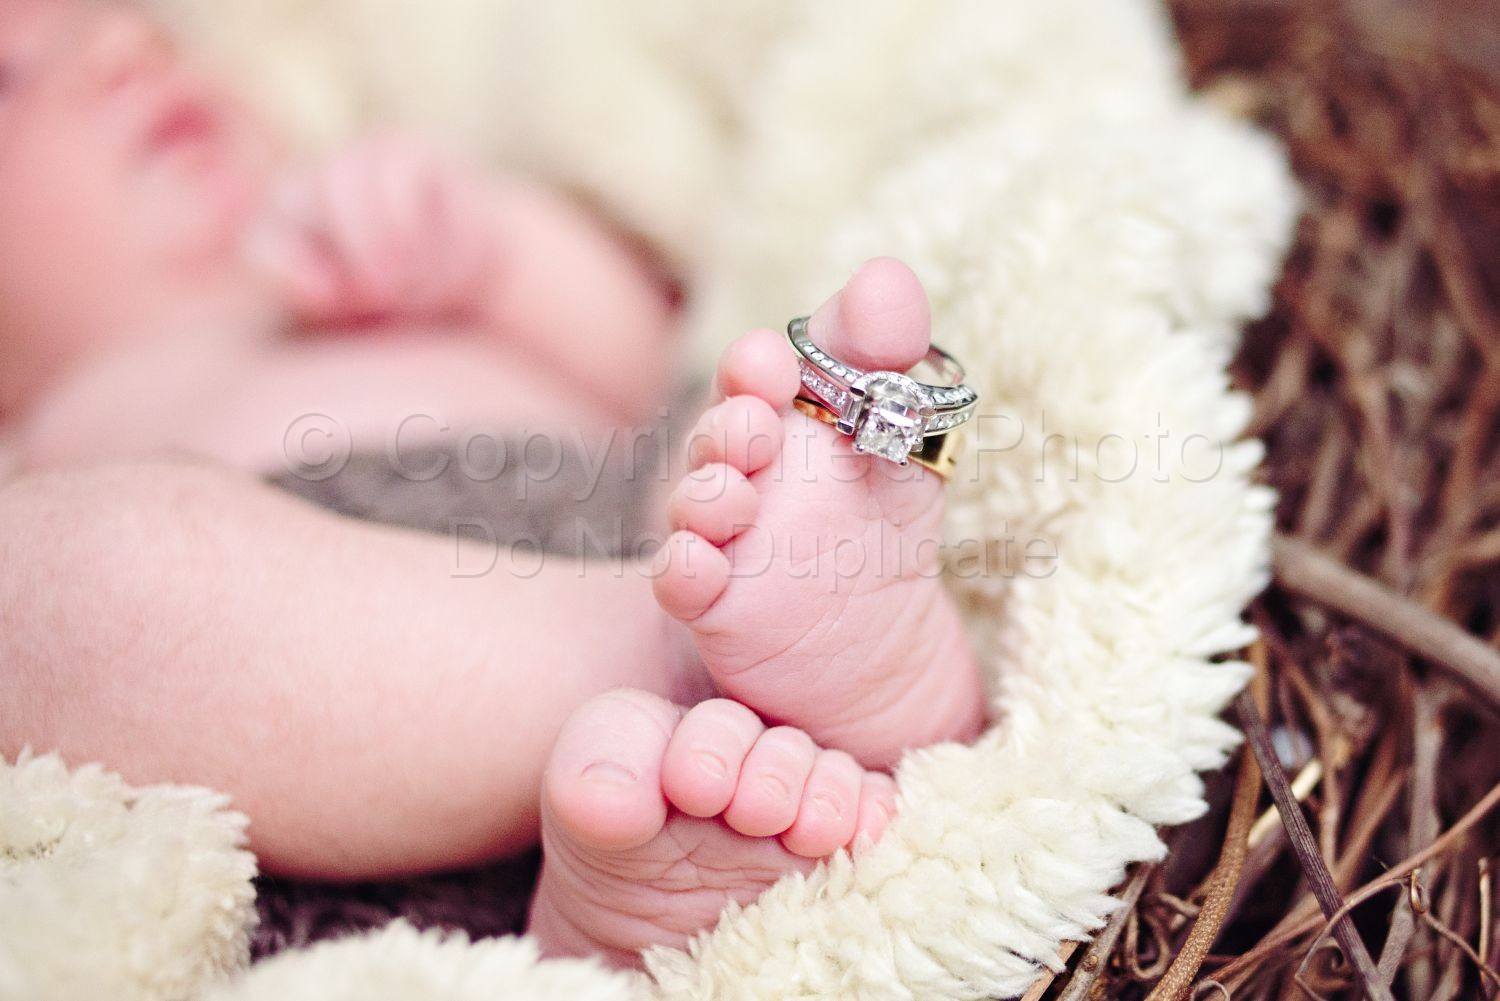 Baby Adrian | Farh-129-Edit.jpg